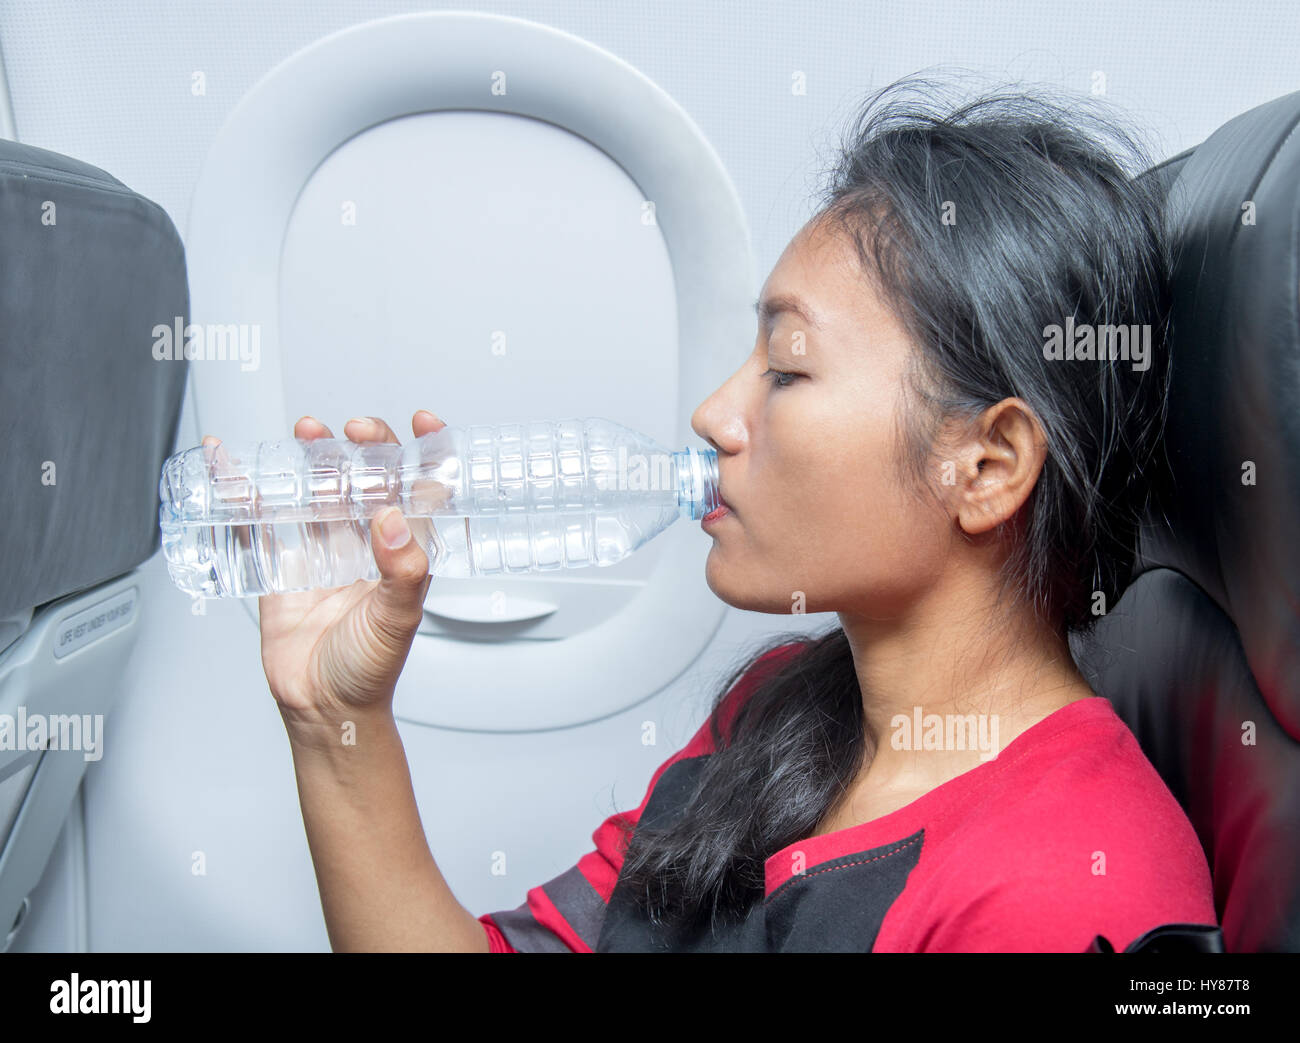 Femme en avion boit de l'eau d'une bouteille en plastique. Un avion du passager volant dans le rafraîchit boire à sa bouteille. Banque D'Images